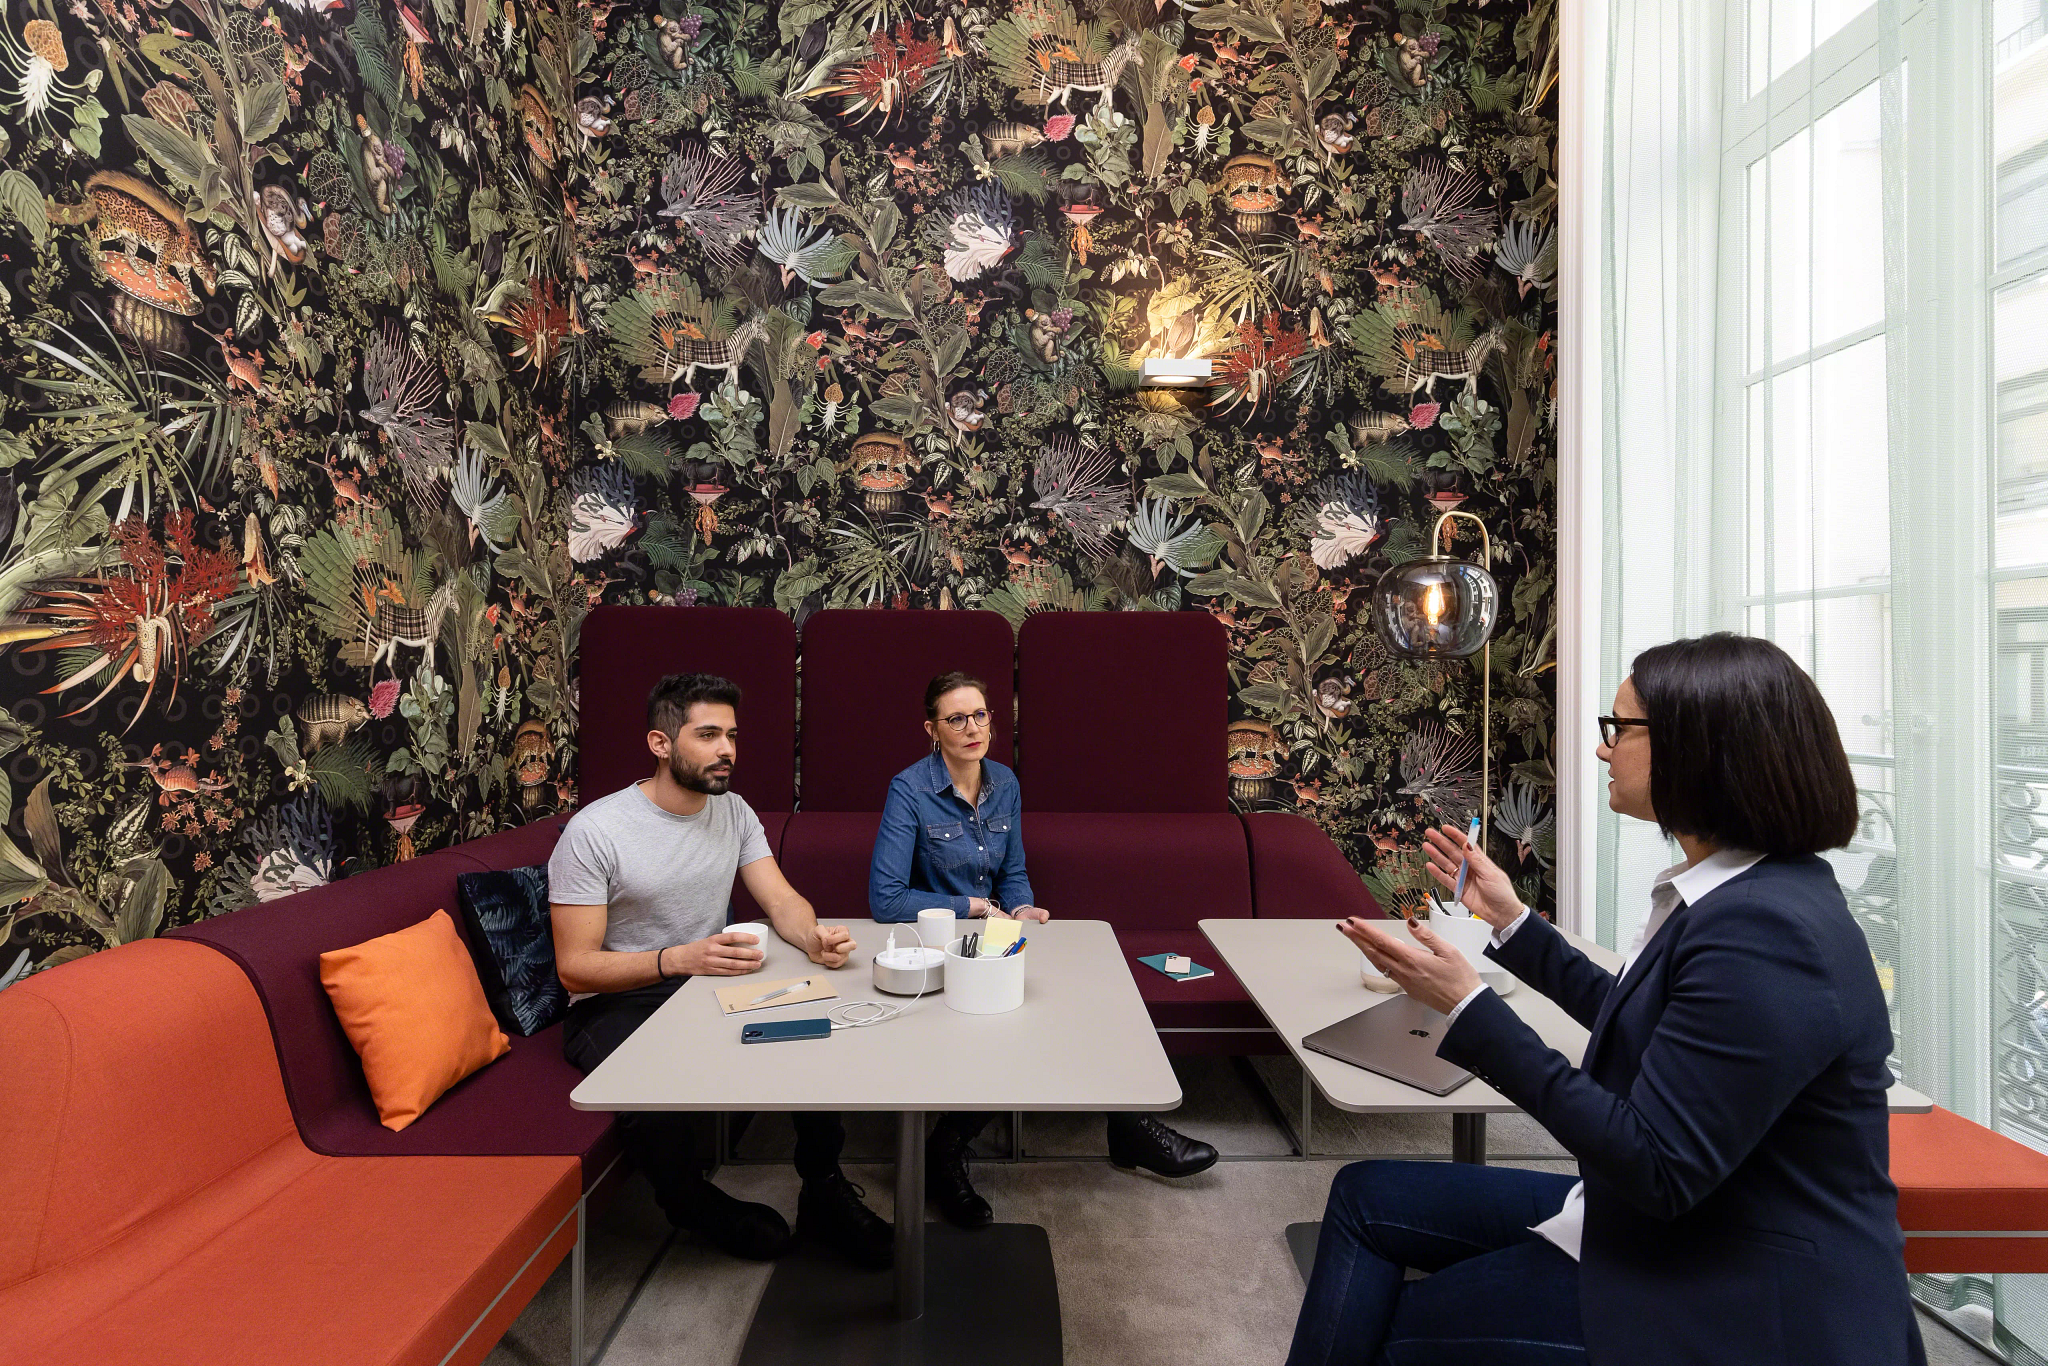 Chaque salle de réunion est réservable et possède une atmosphère différente, épurée pour les entretiens au long cours, ou au contraire plus colorée pour les entrevues plus brèves ou les points d'équipe.